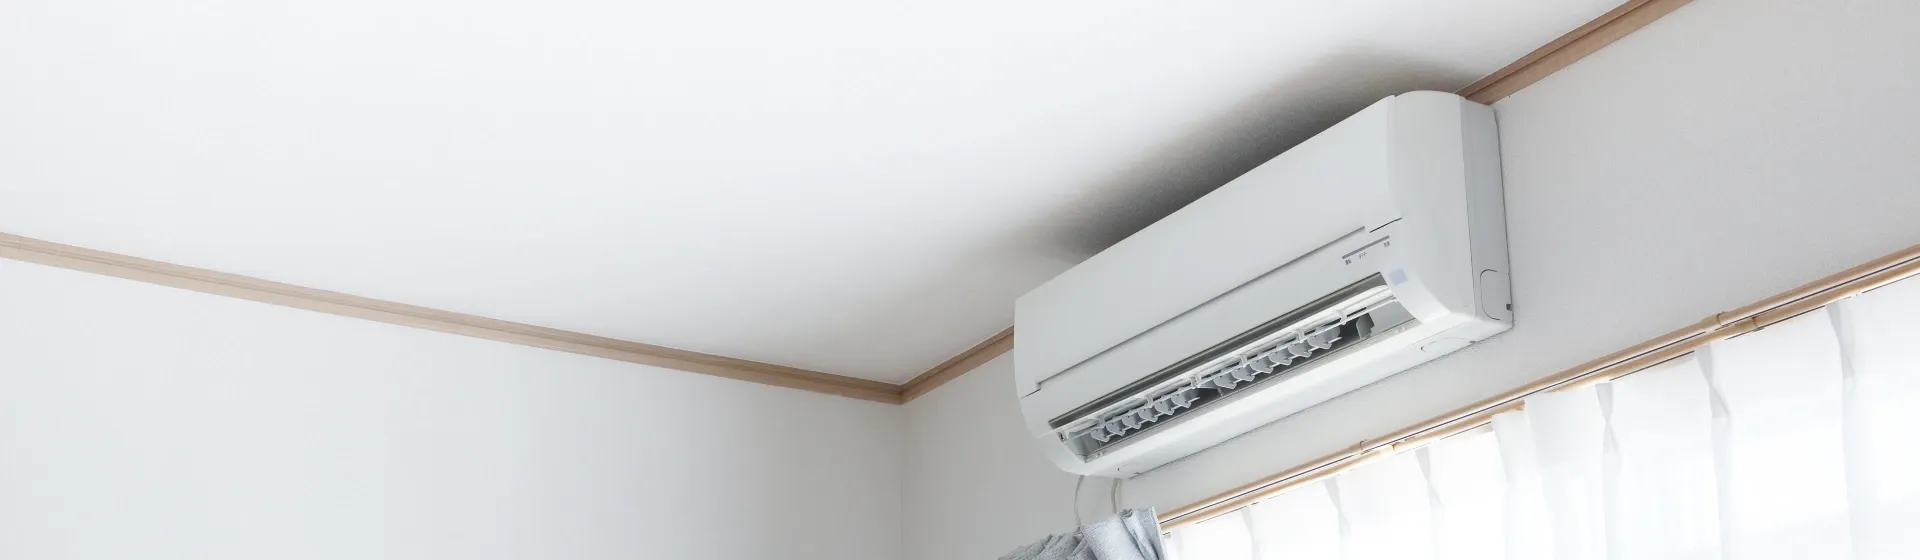 Imagem de ar-condicionado split instalado em cima da janela do quarto